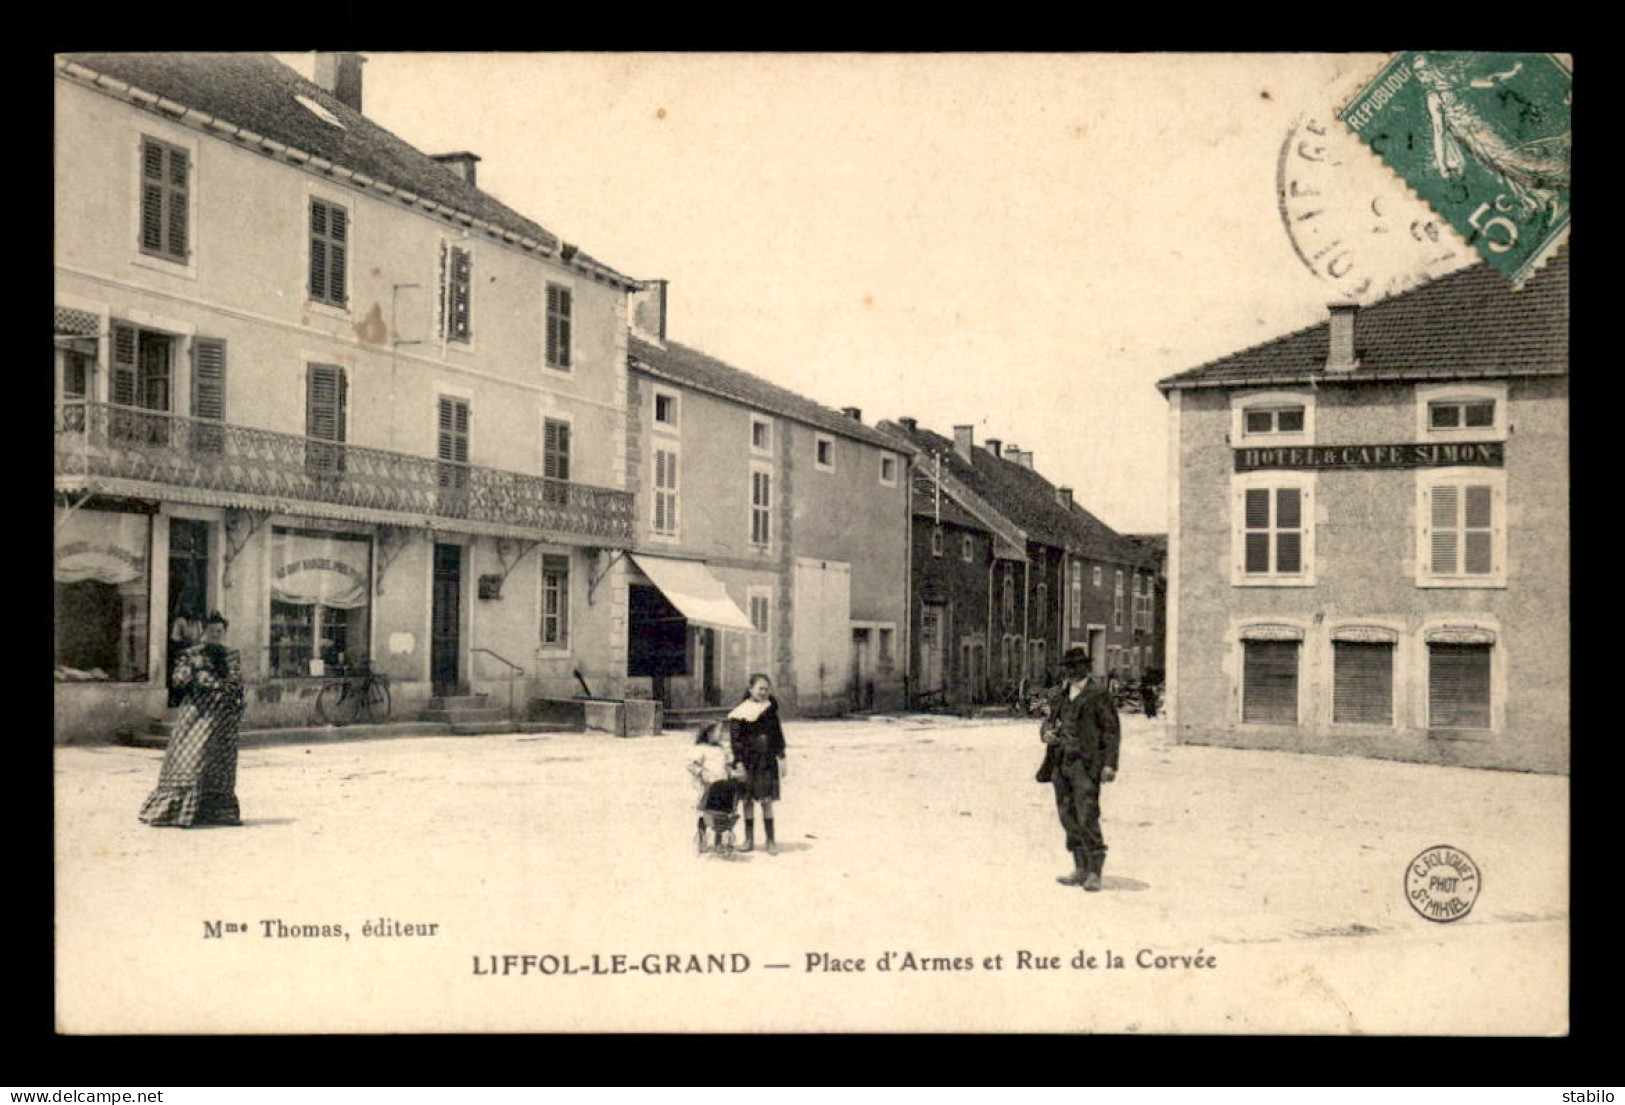 88 - LIFFOL-LE-GRAND - PLACE D'ARMES ET RUE DE LA CORVEE - HOTEL-CAFE SIMON - Liffol Le Grand